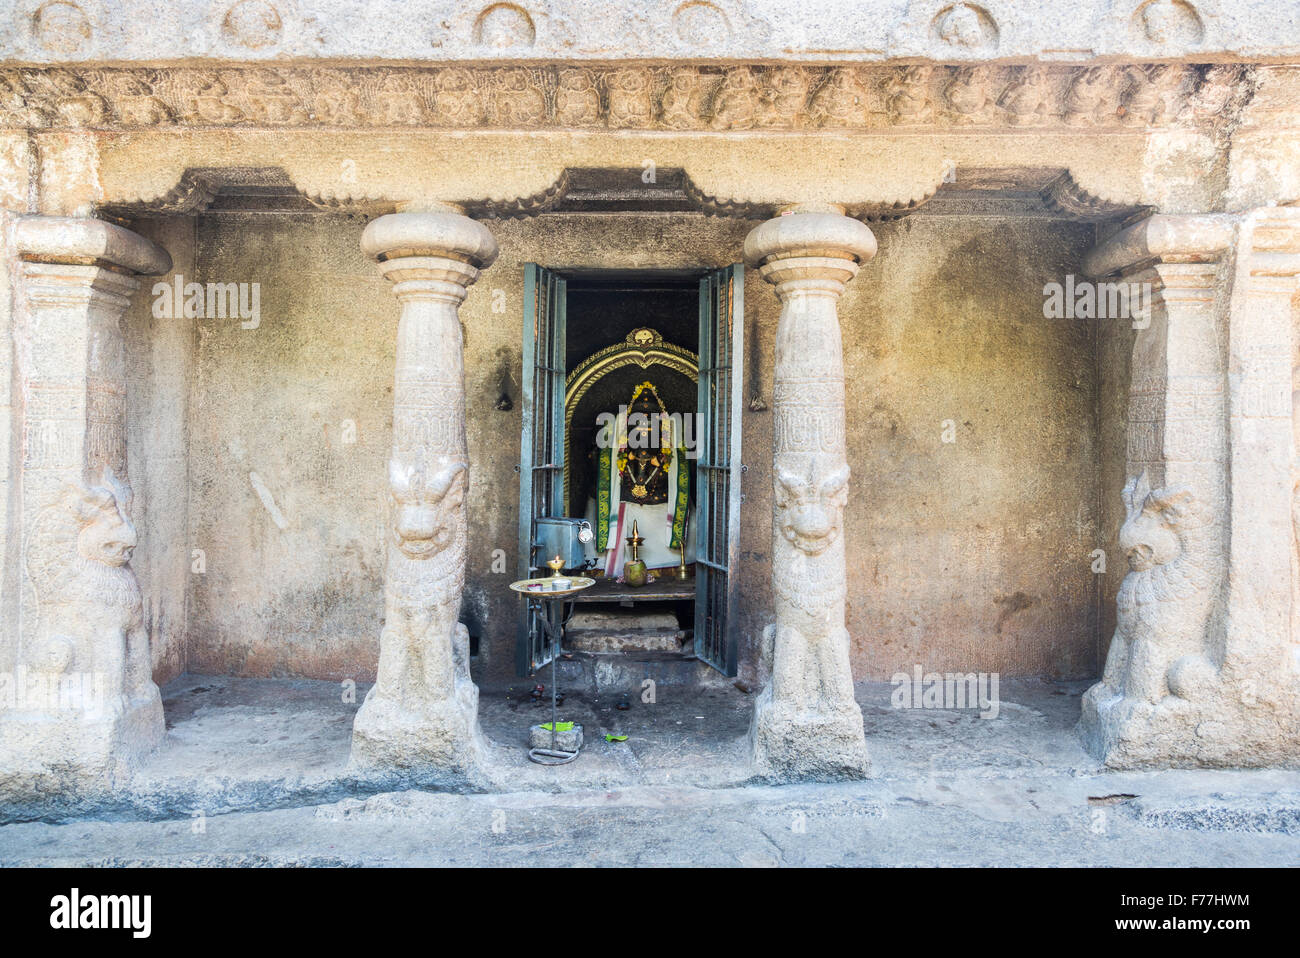 Rock hindoue antique temple de Mahabalipuram (Mamallapuram), Kancheepuram district près de Chennai, Tamil Nadu, Inde du sud Banque D'Images